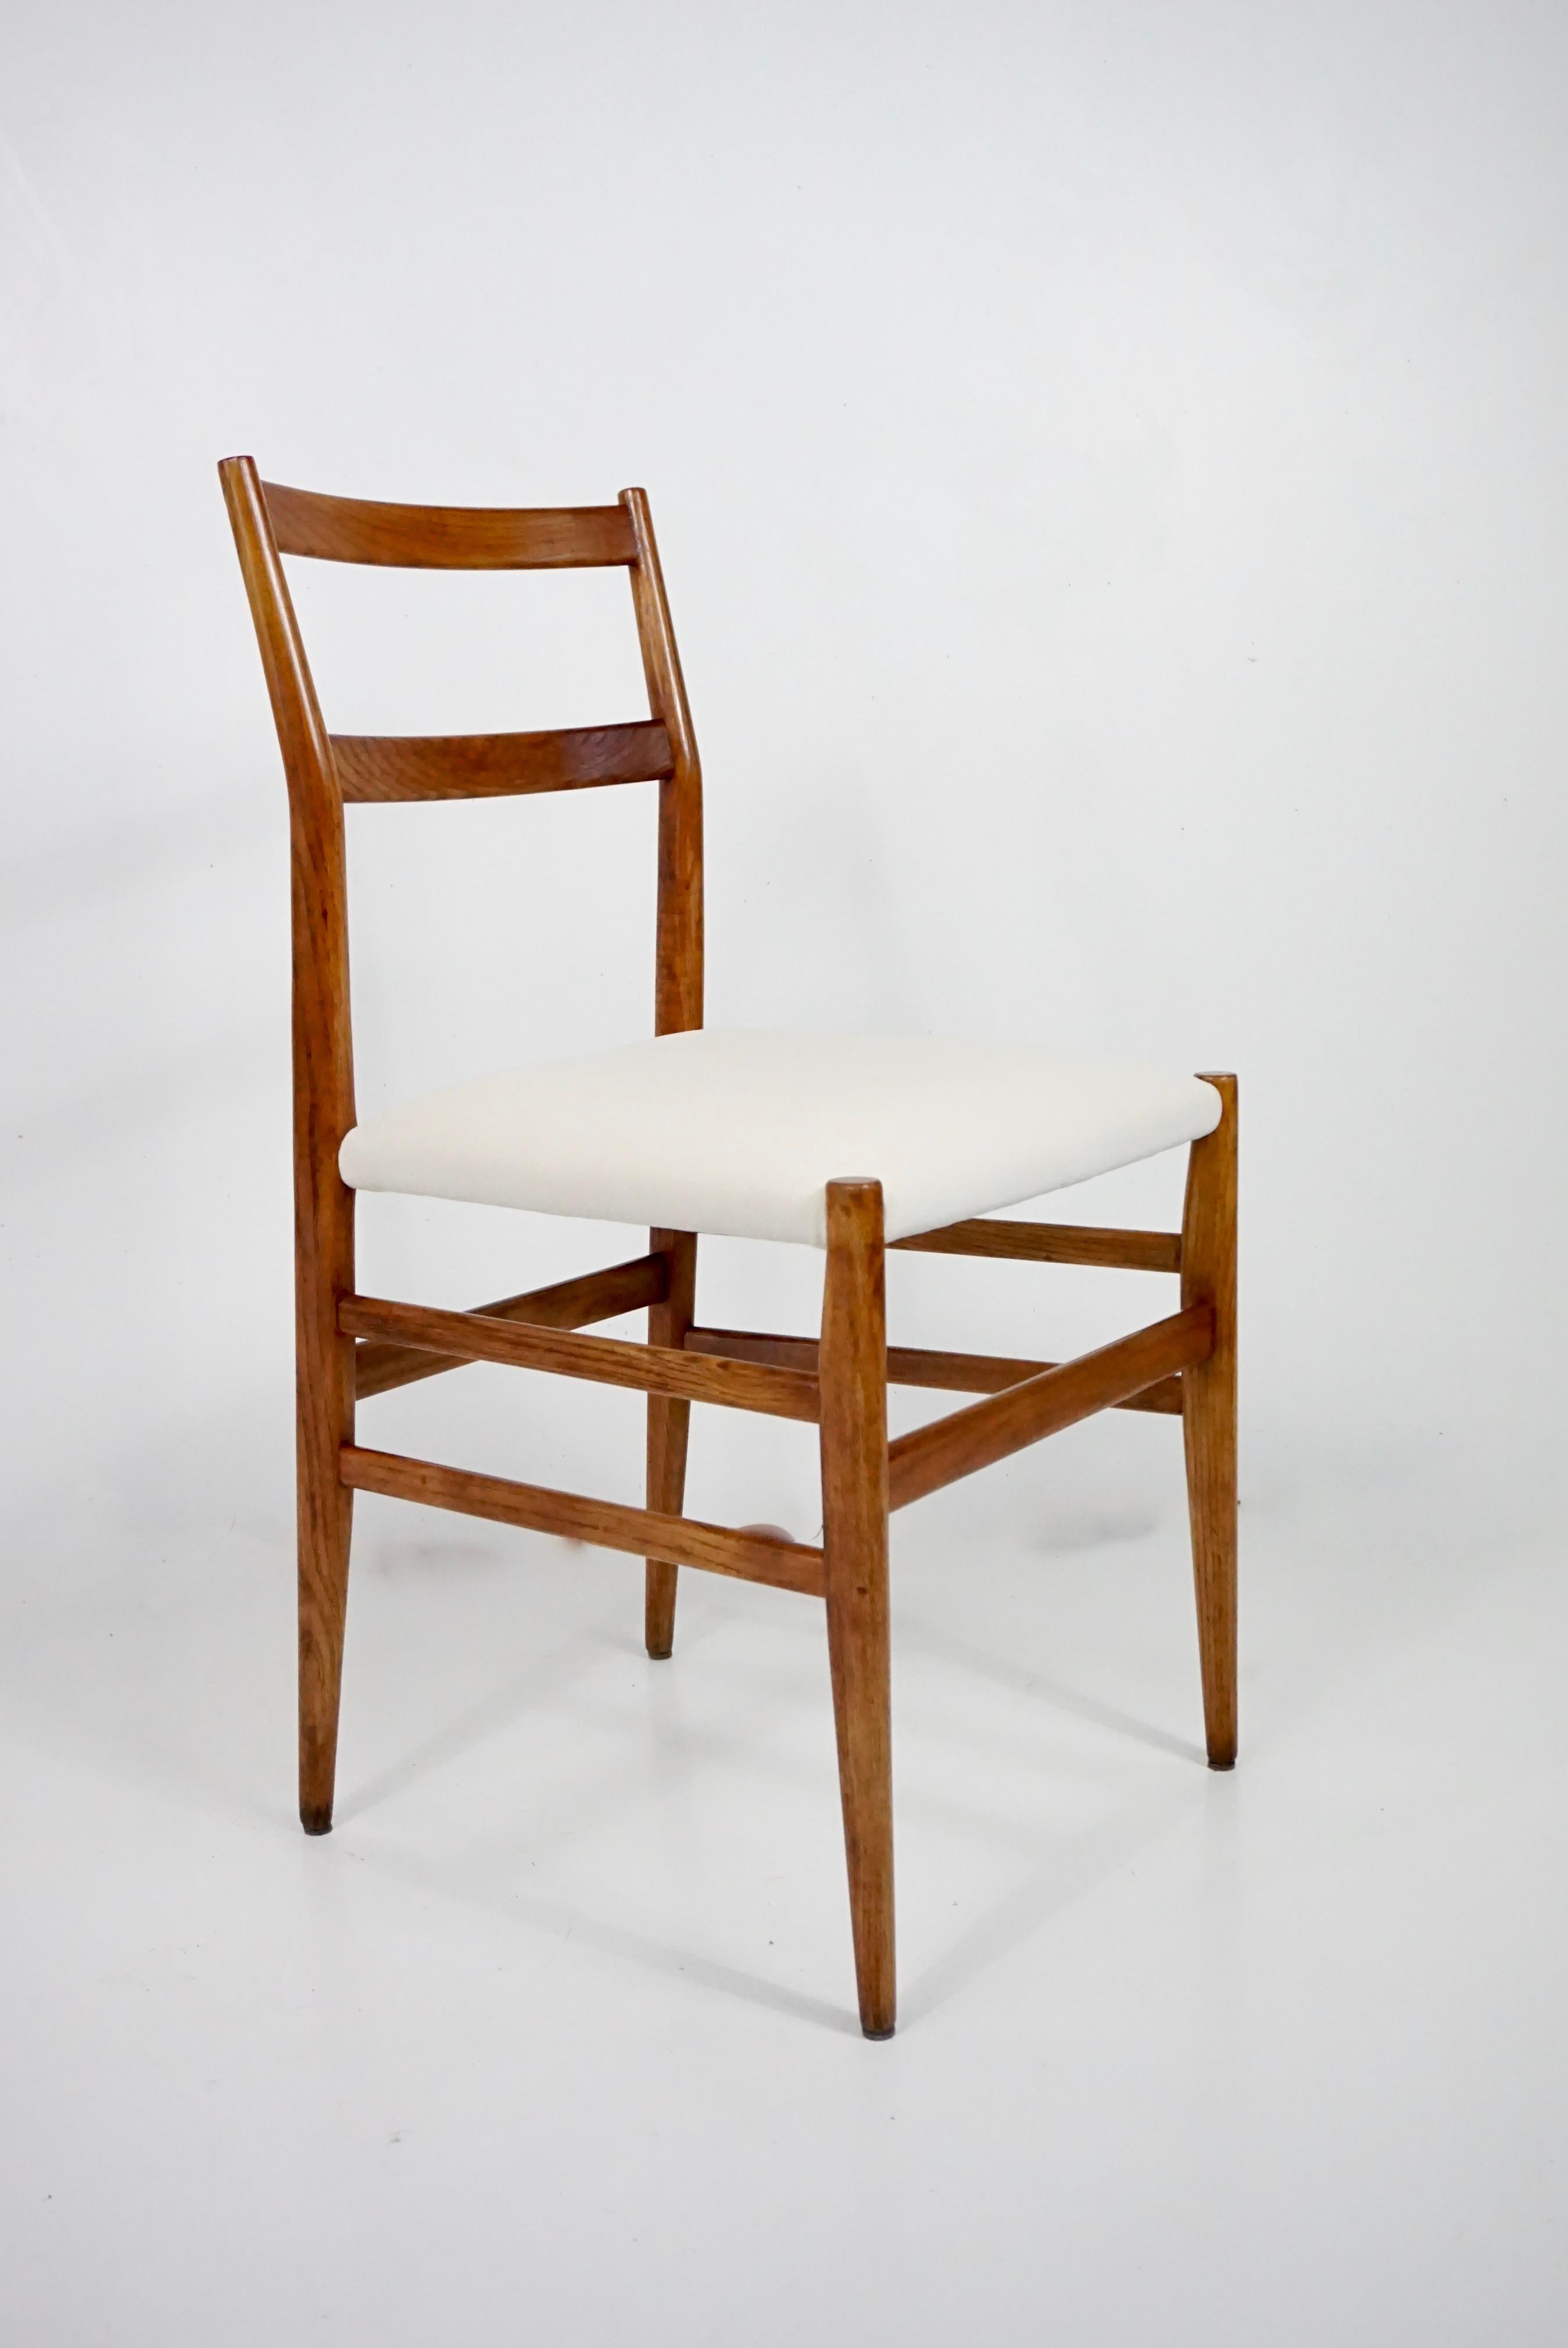 Très rare chaise iconique de Gio Ponti, n. 646 de Cassina
frêne et rembourrage en coton ivoire
ce modèle a été fabriqué par Cassina, Meda, comme une variante de la légendaire chaise 